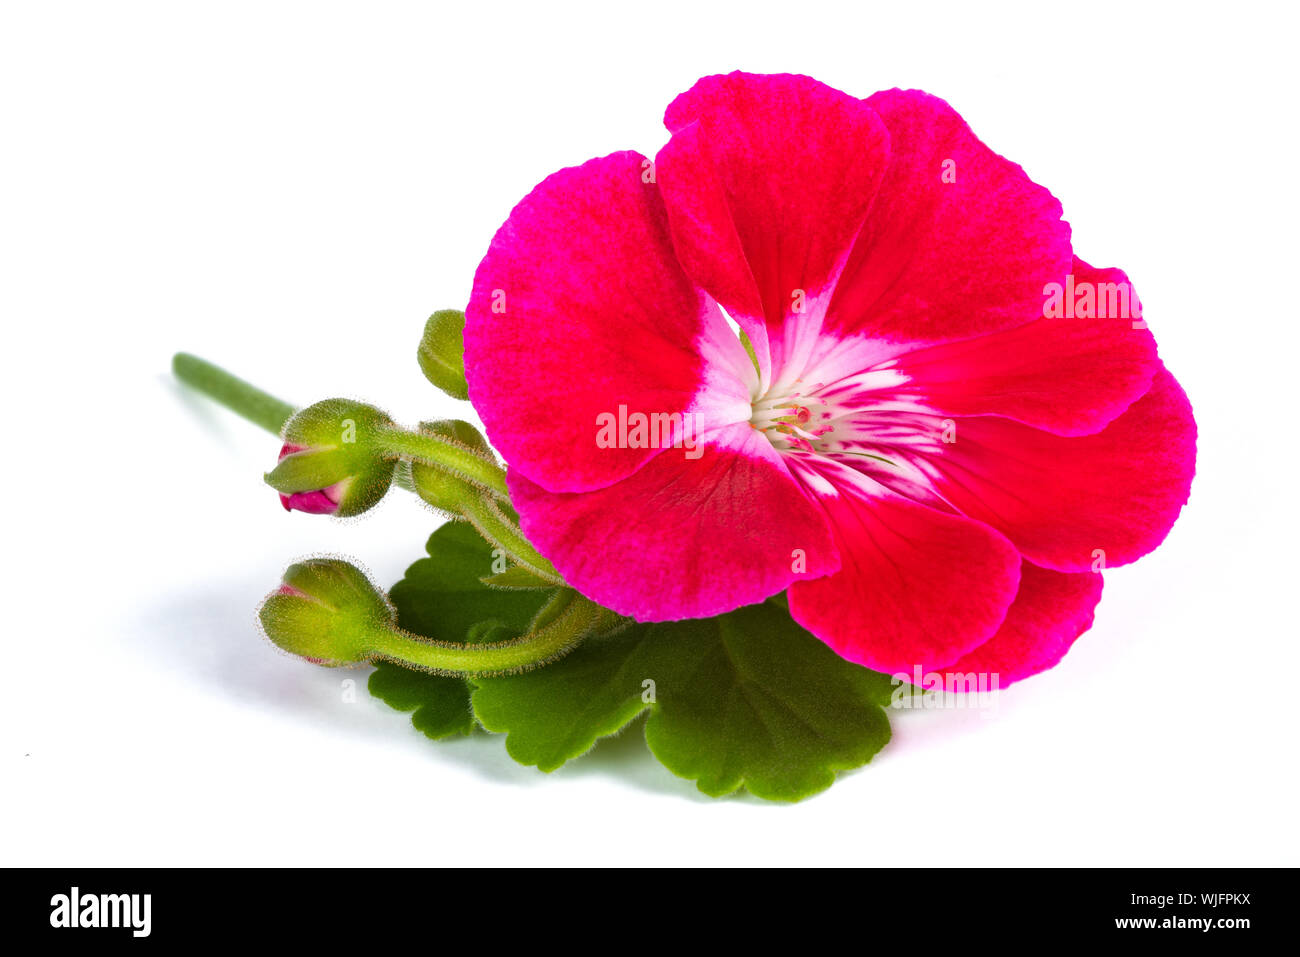 Red pelargonium flower  isolated on white background Stock Photo